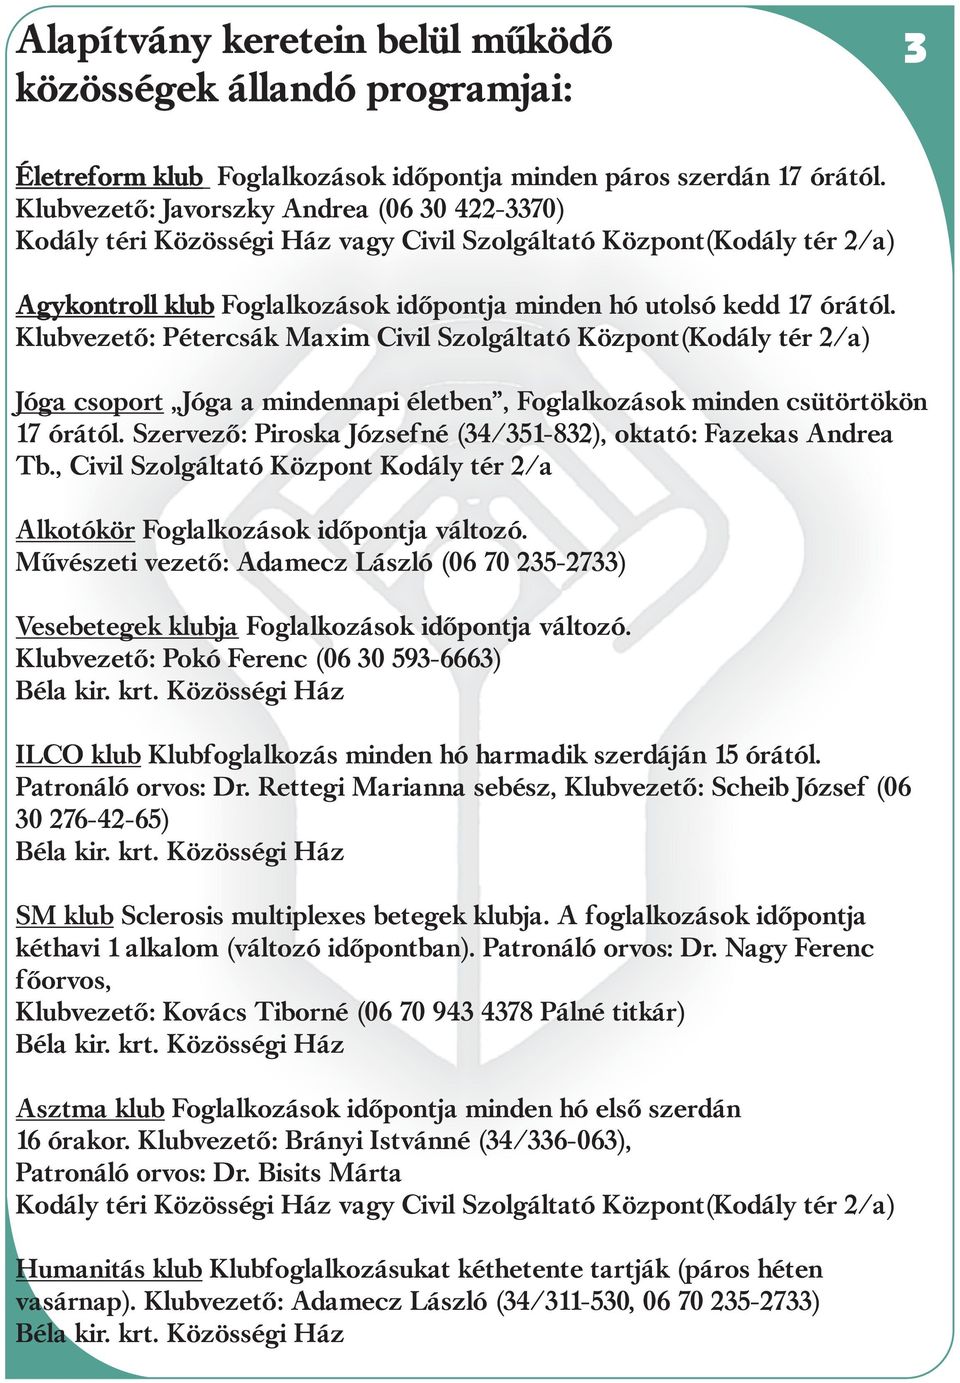 Klubvezetõ: Pétercsák Maxim Civil Szolgáltató Központ(Kodály tér 2/a) Jóga csoport Jóga a mindennapi életben, Foglalkozások minden csütörtökön 17 órától.